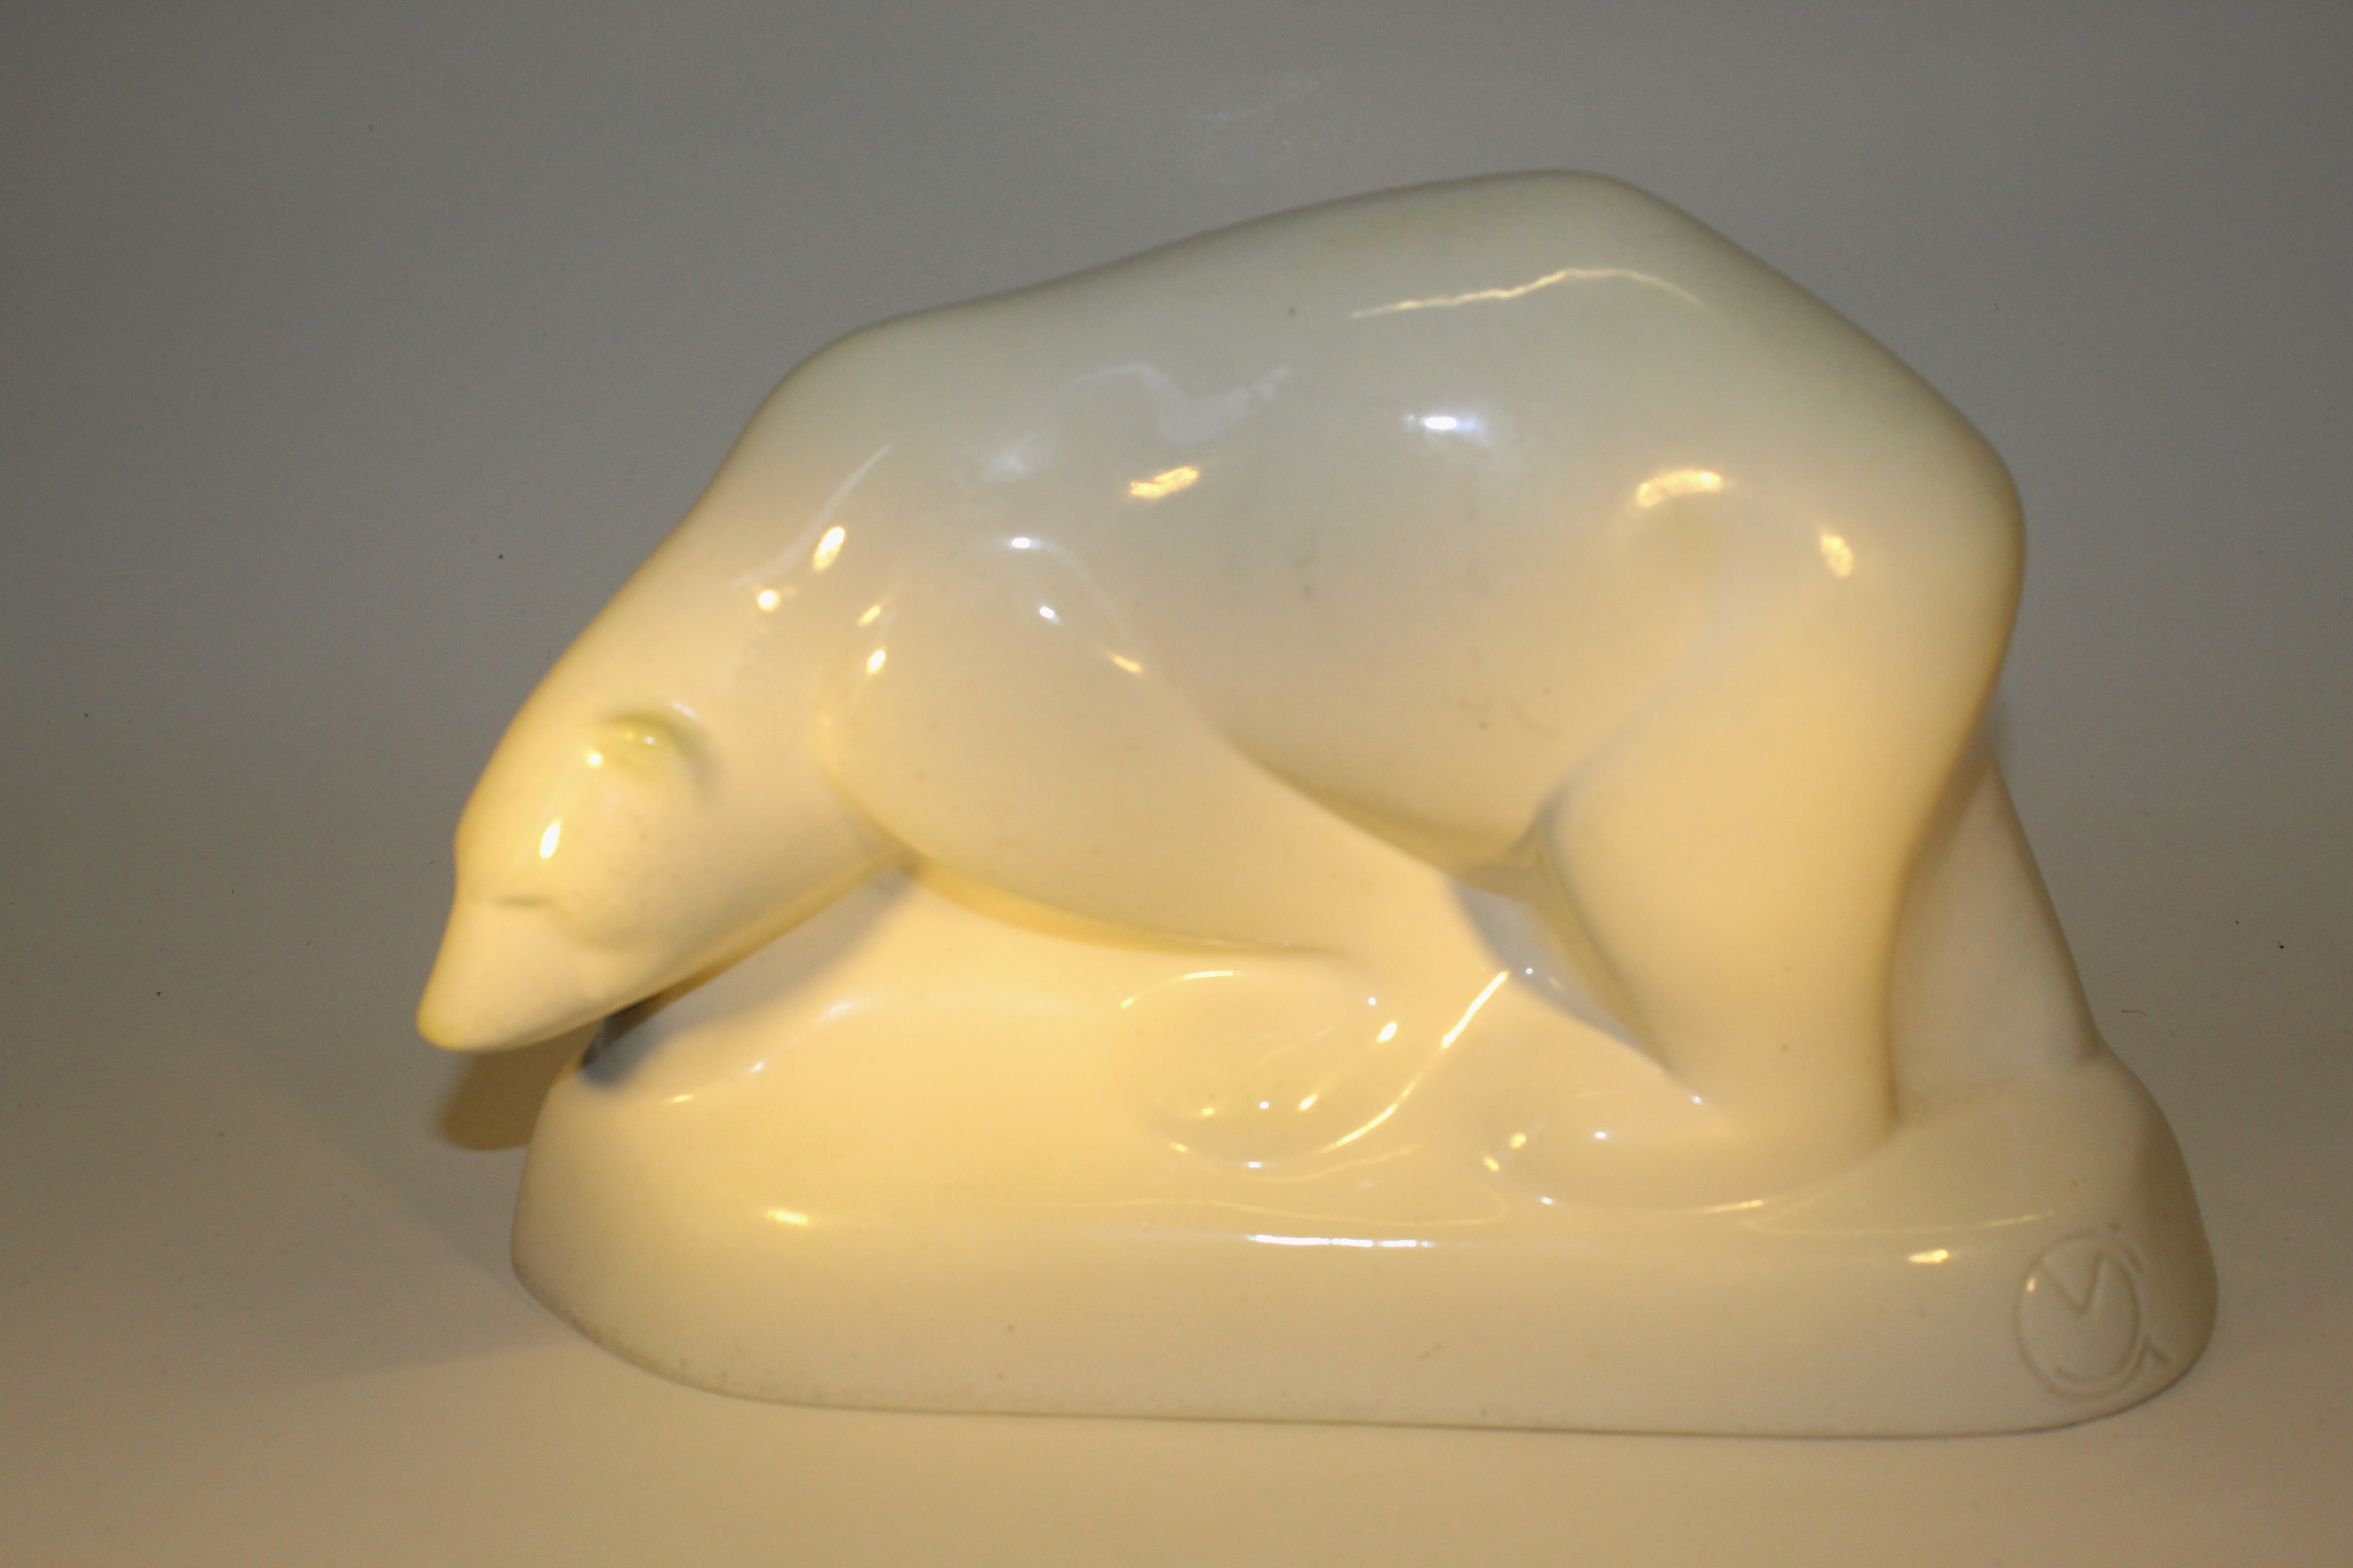 RAM Arnhem vormstuk van ijsbeer (verkochtsold)